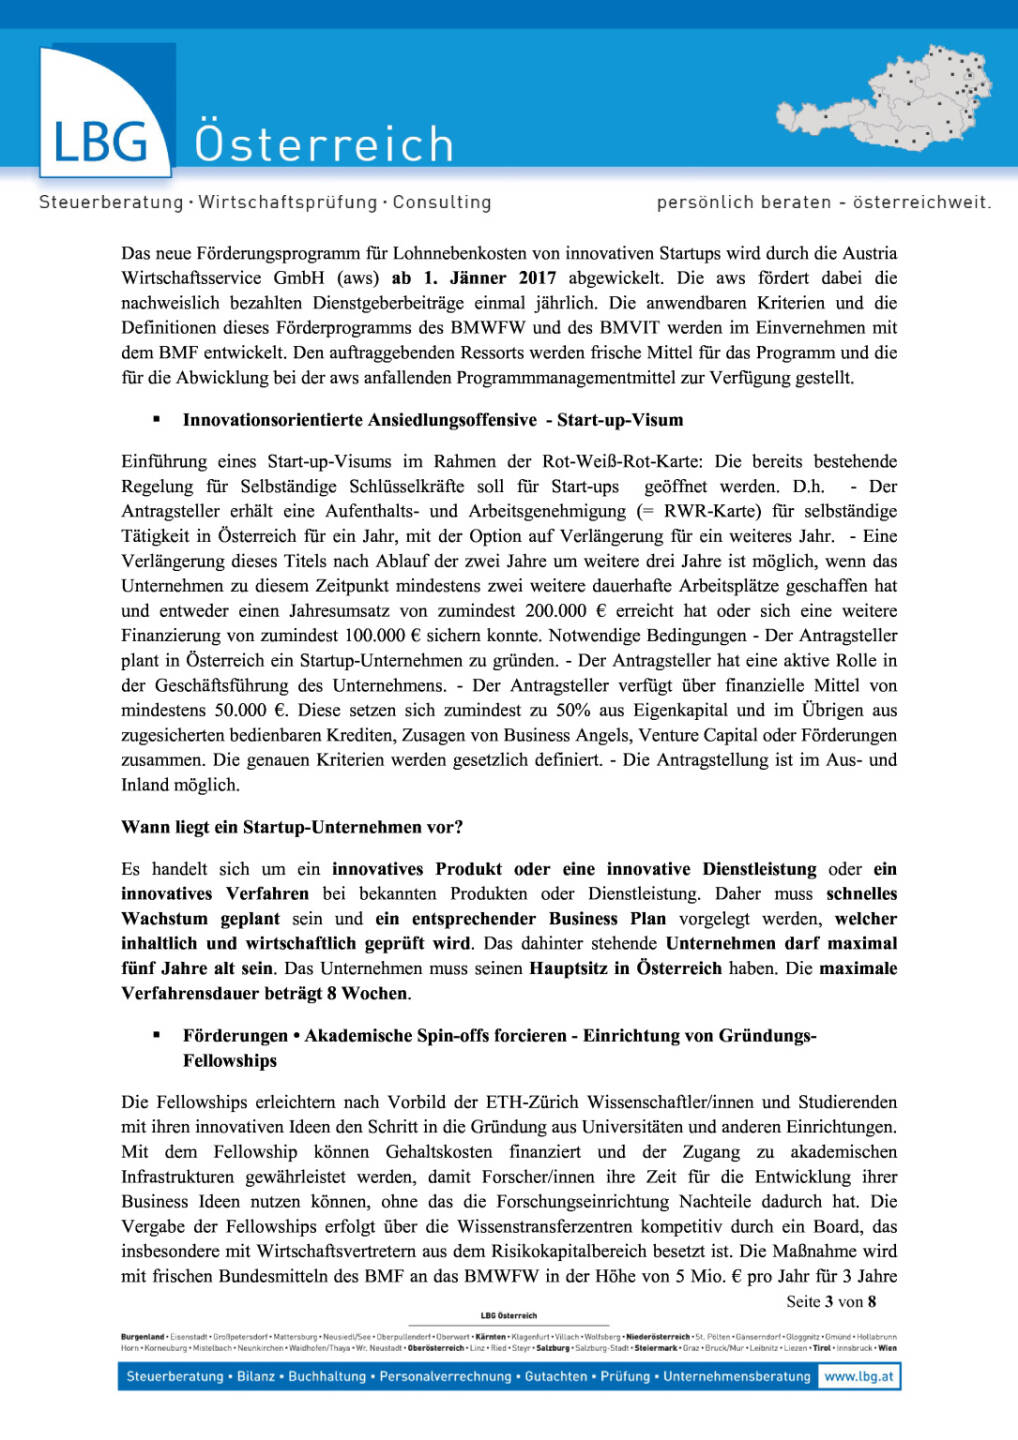 LBG Österreich: Ministerrat beschließt Paket zur Stärkung von Start-ups in Österreich, Seite 3/8, komplettes Dokument unter http://boerse-social.com/static/uploads/file_1344_lbg_osterreich_ministerrat_beschliesst_paket_zur_starkung_von_start-ups_in_osterreich.pdf